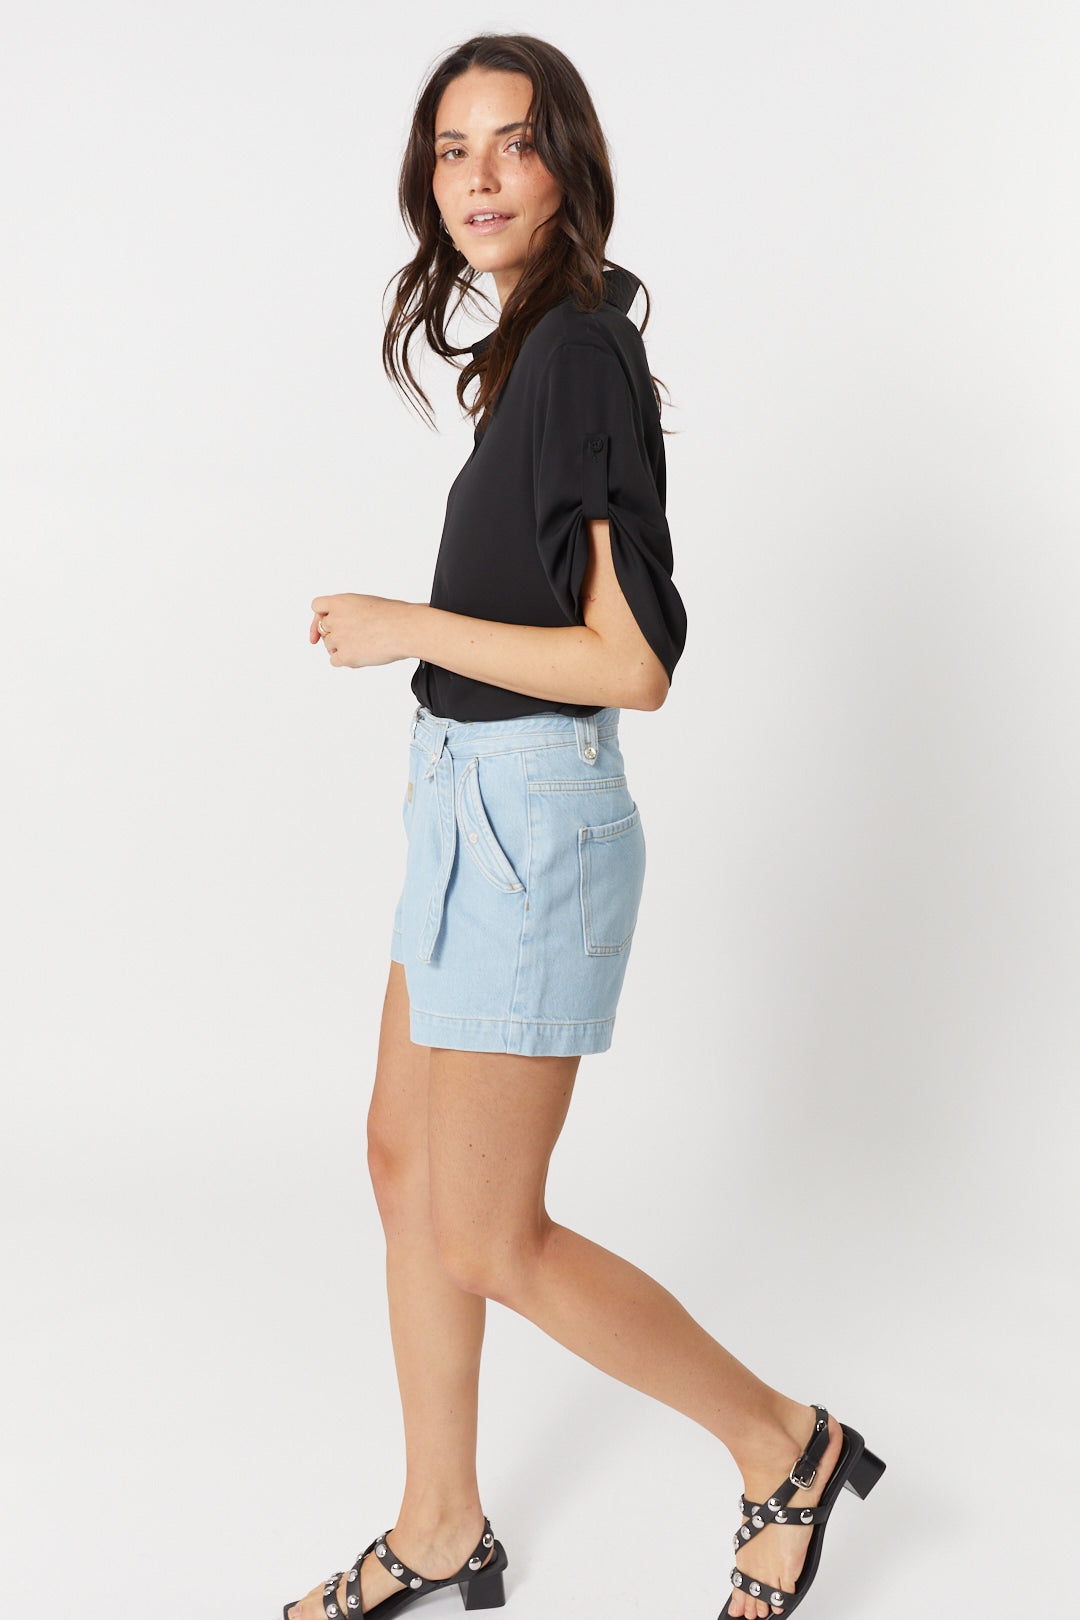 Pale blue denim shorts | Sarah